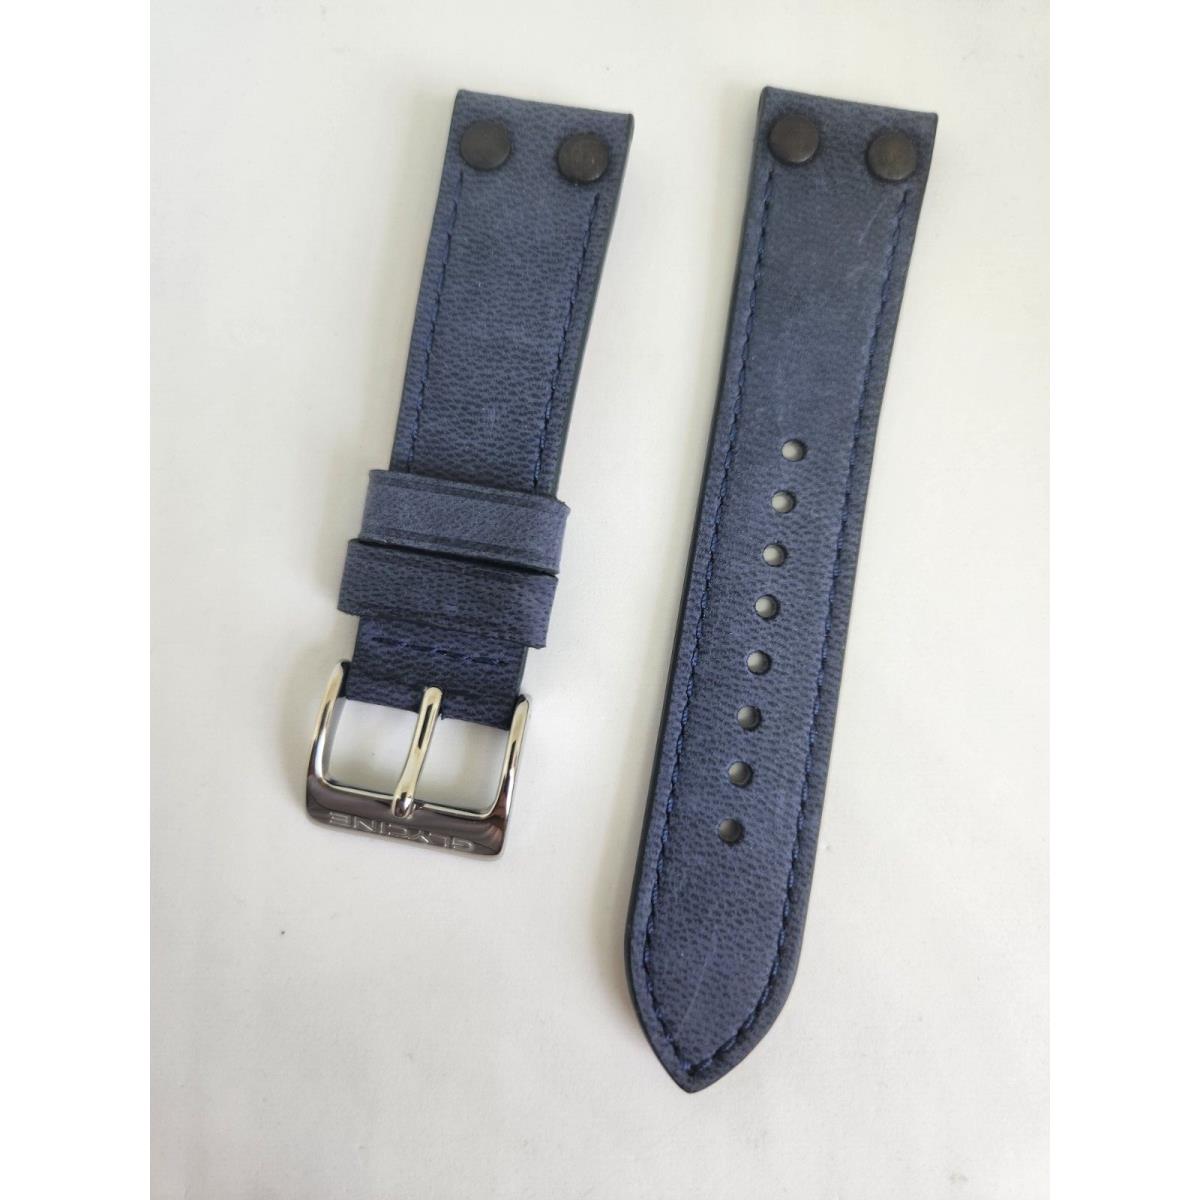 Oem Glycine F104 22mm Blue Leather Strap Band Bracelet For Model GL0127 Etc